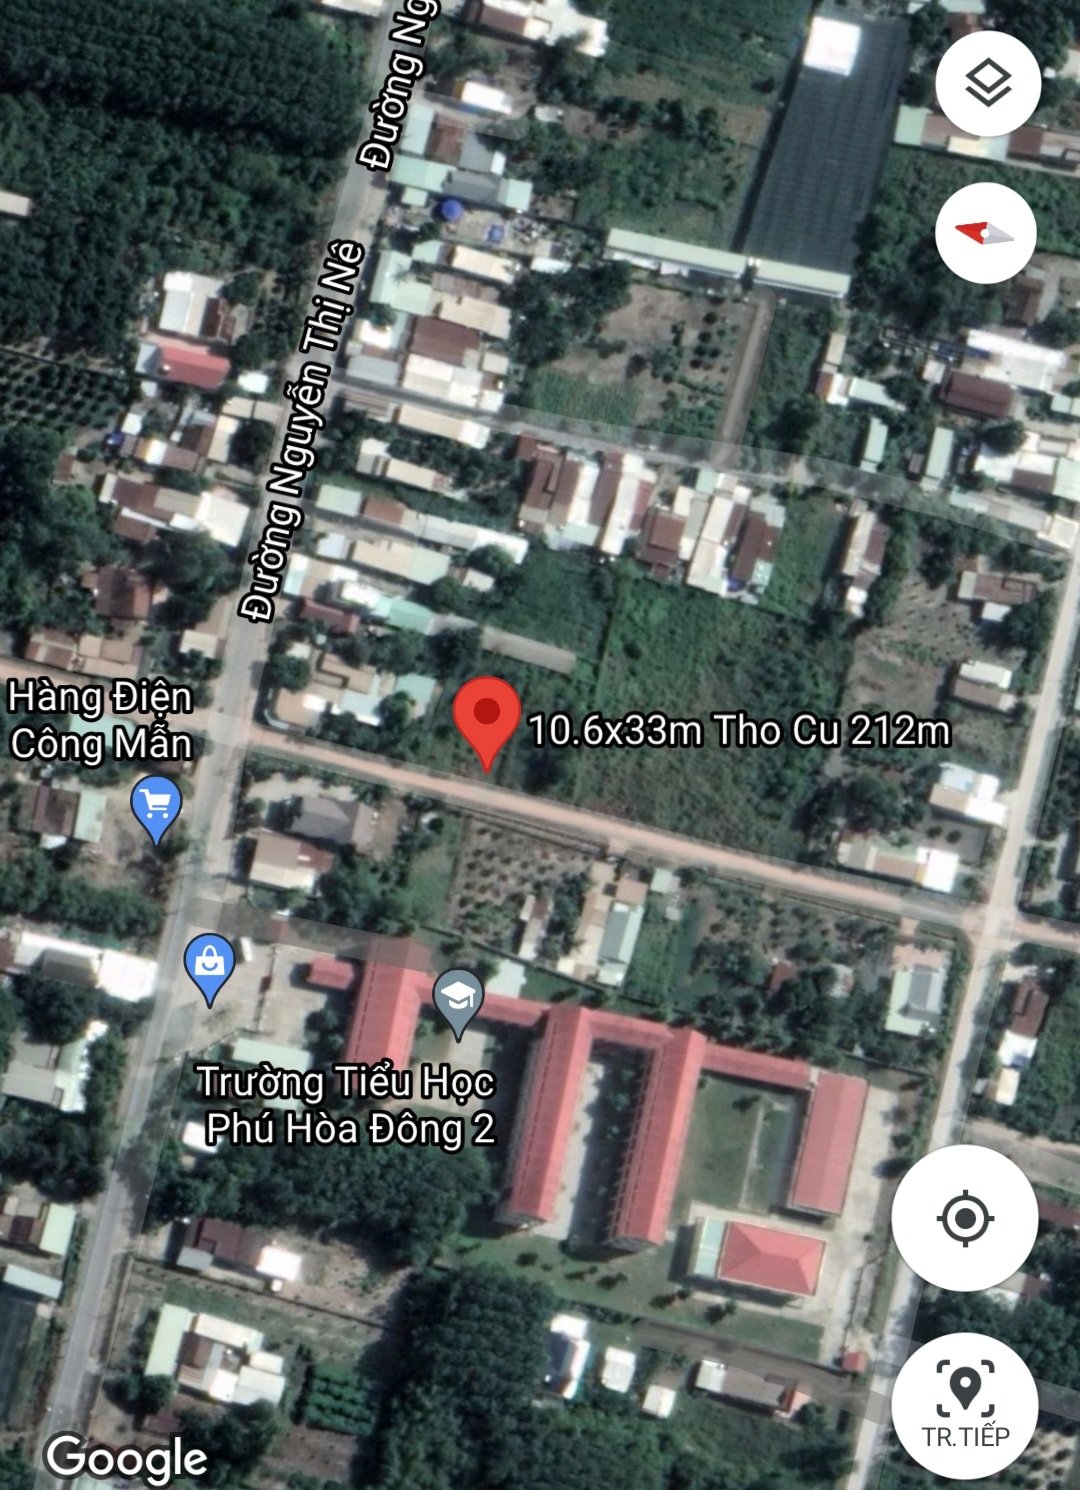 Ảnh nhà đất Đất Củ Chi giá rẻ khu dân cư cách Nguyễn Thị Nê đúng 100m, 10.6x33m thổ cư hơn 200m2, gần trường học